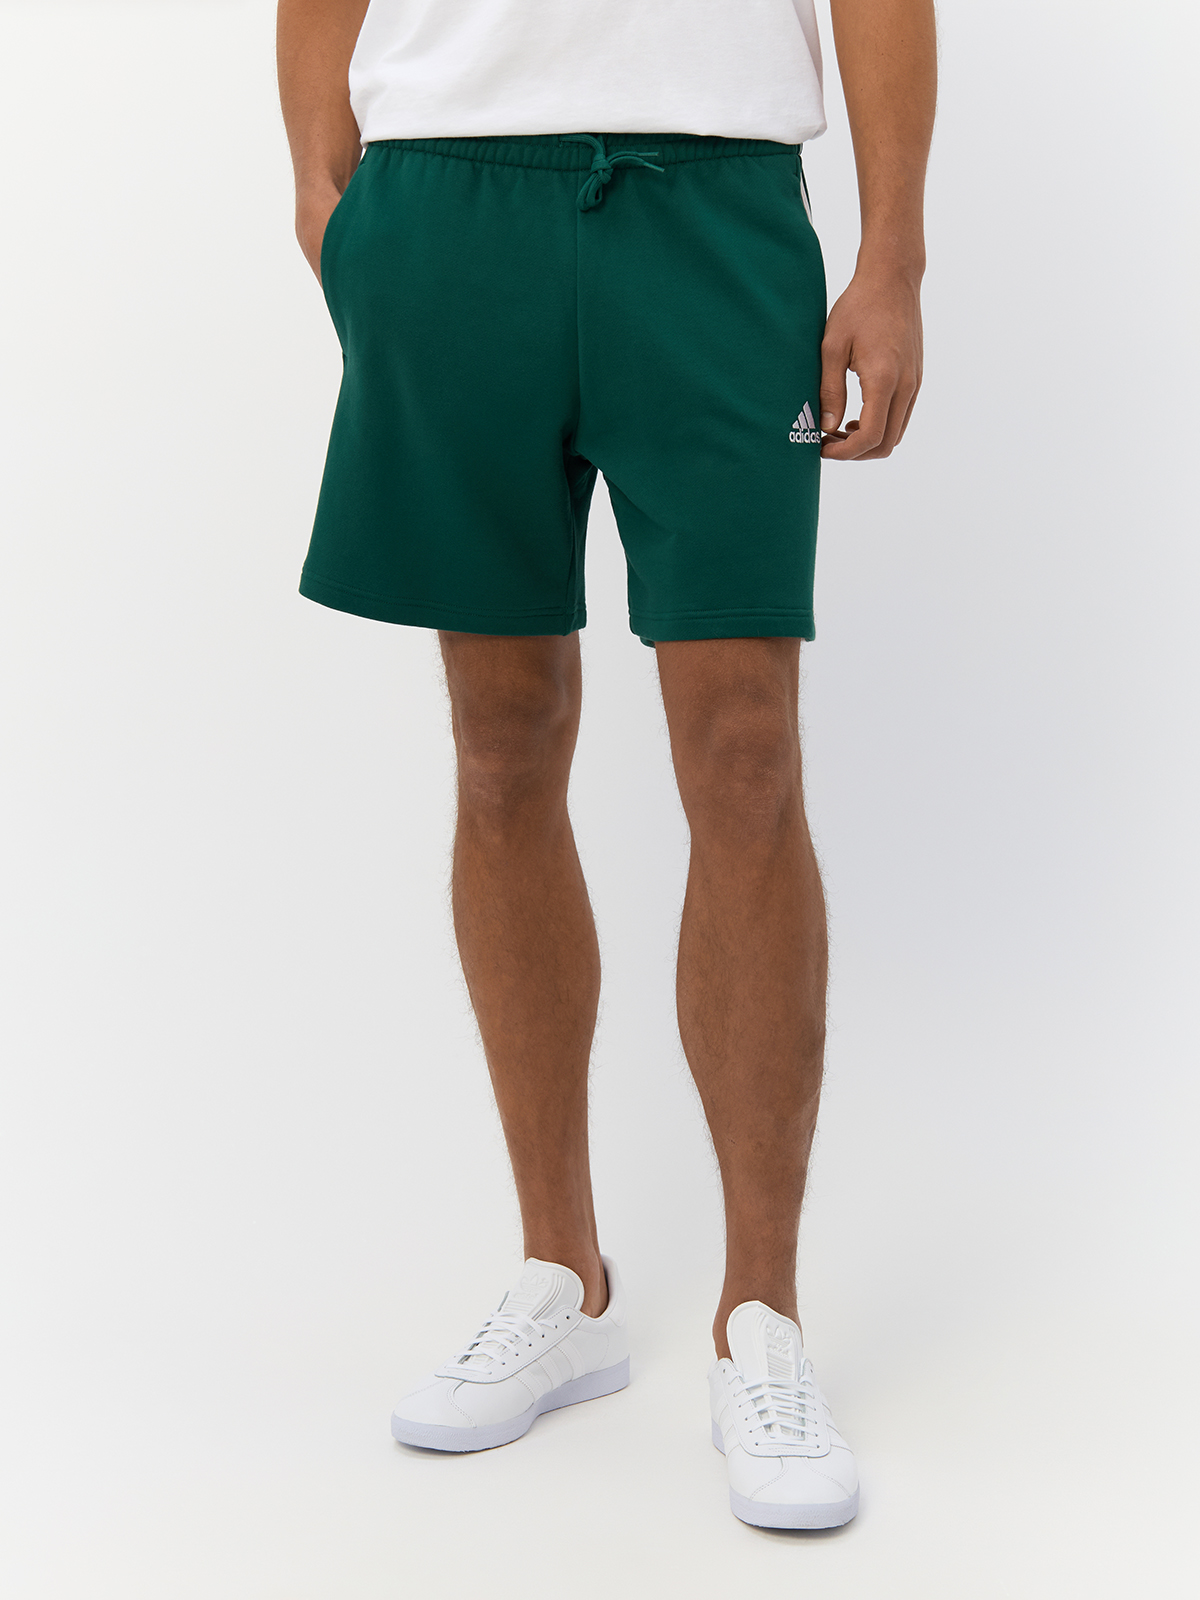 Повседневные шорты Adidas для мужчин, IS1342, размер XL, зелёно-белые-024A